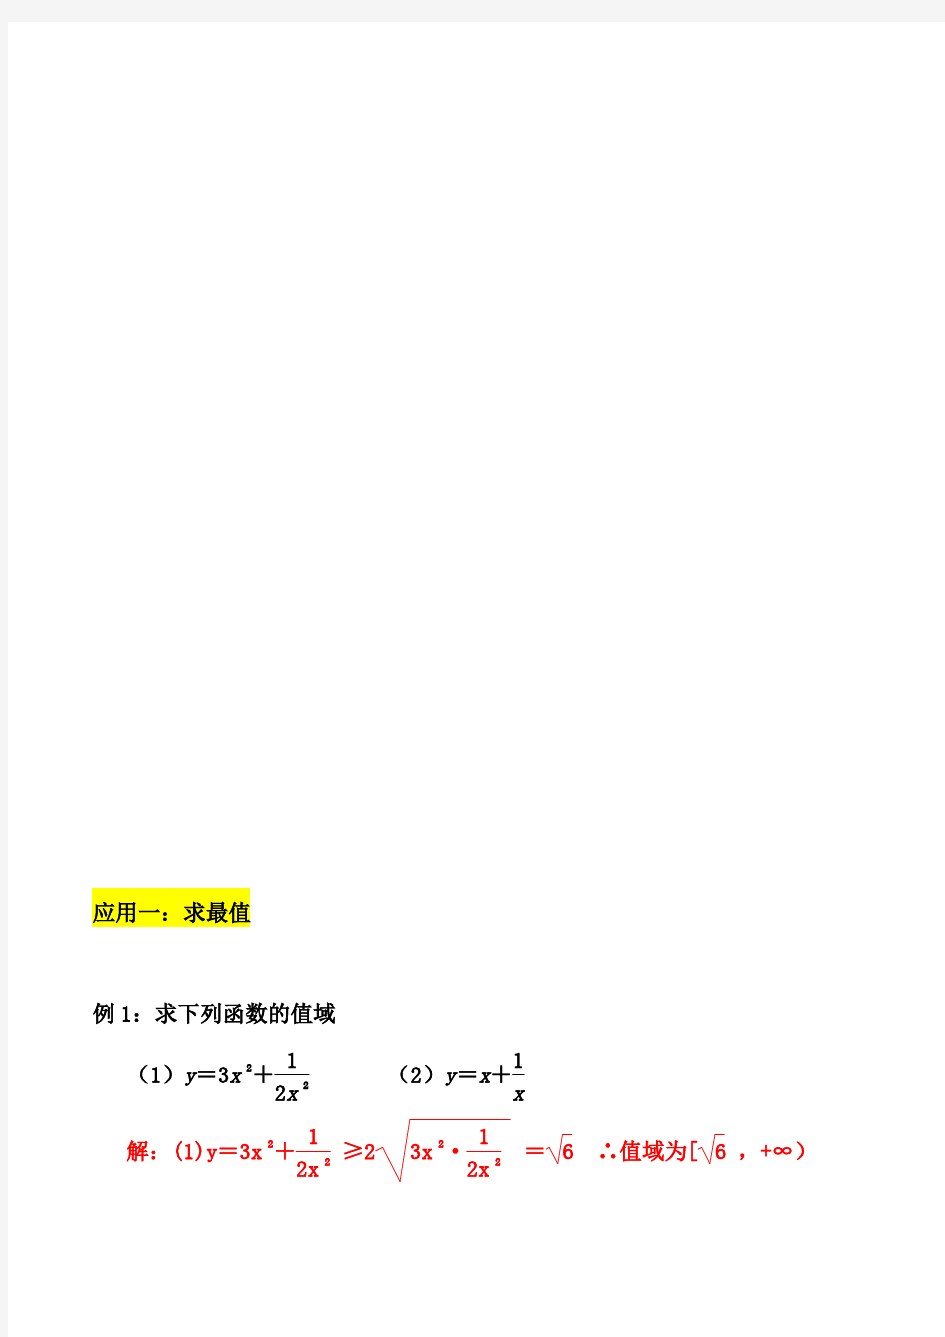 高中数学公式(均值不等式)